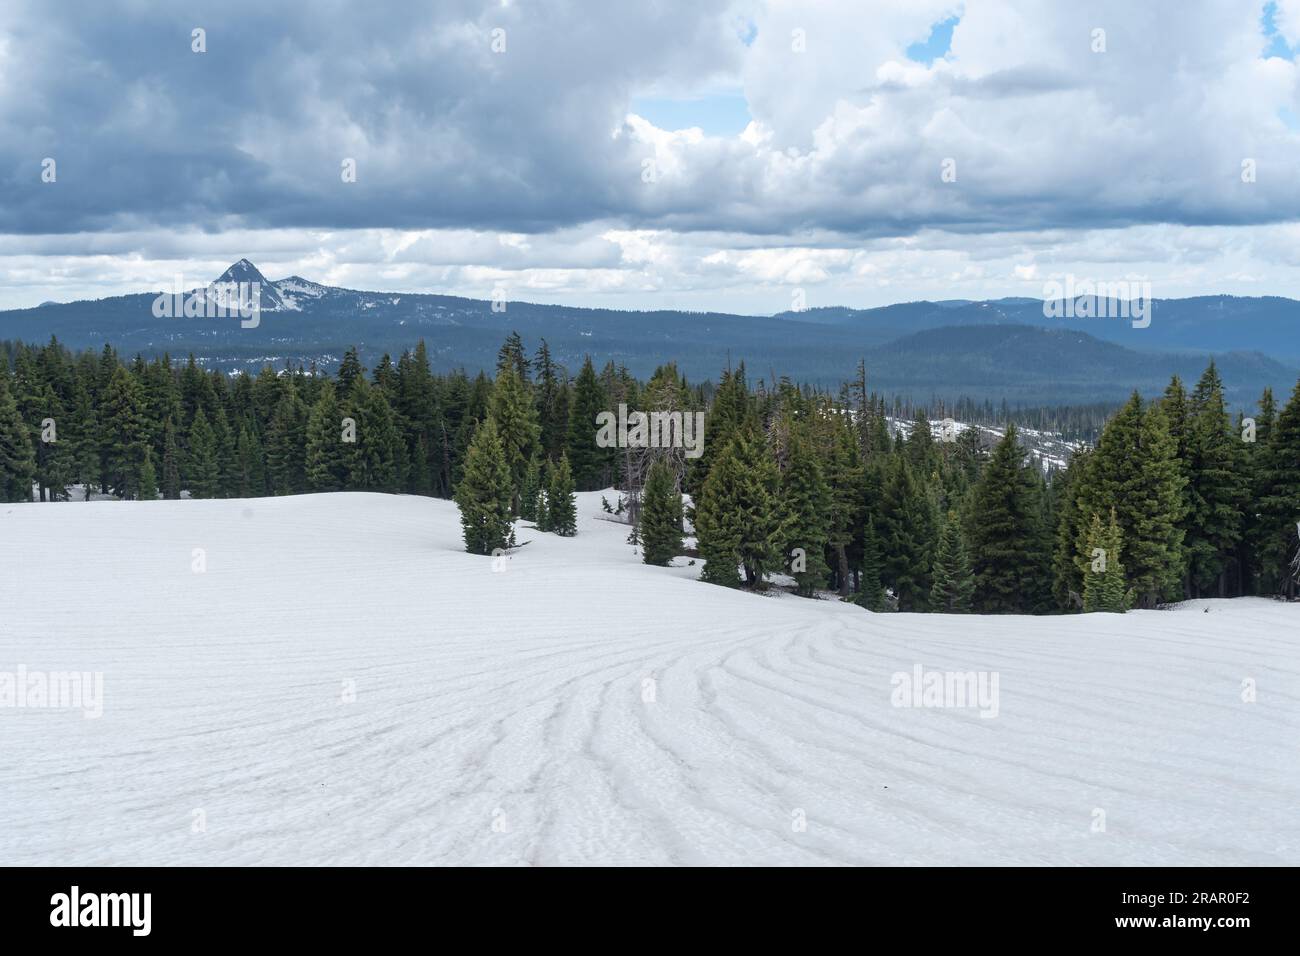 des lignes de neige fondante menant à une forêt de pins avec des montagnes en toile de fond. Banque D'Images